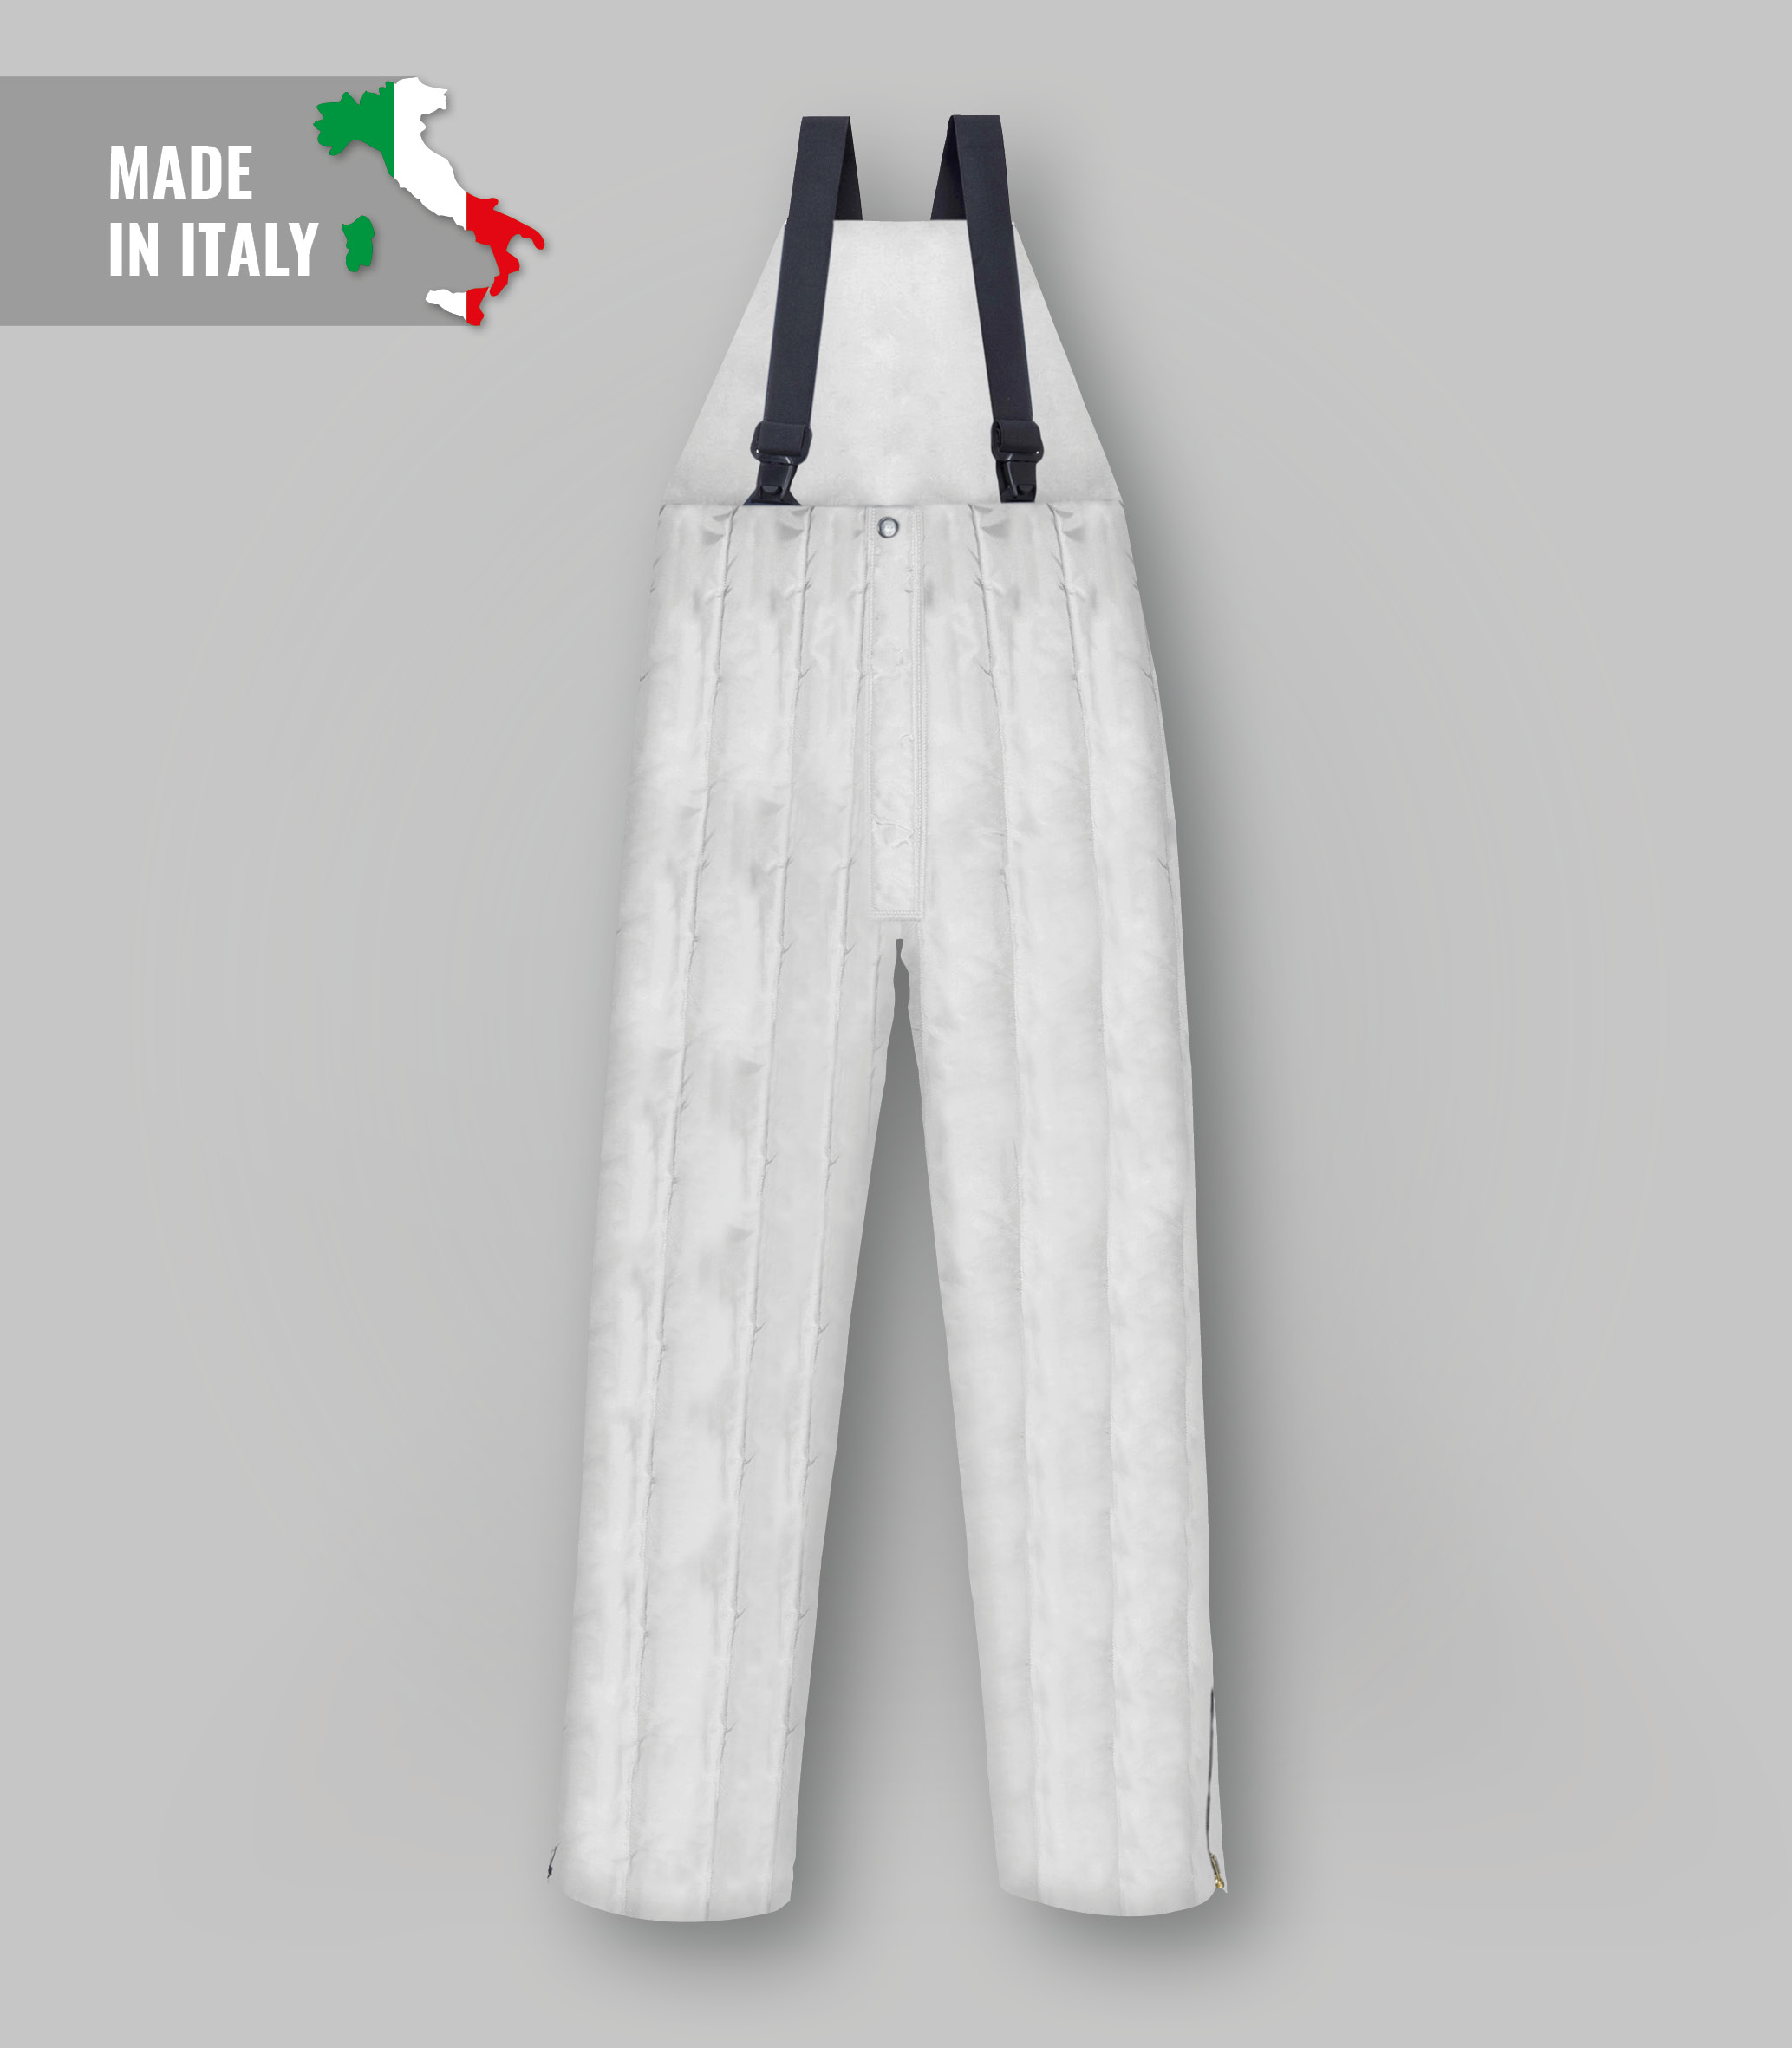 Pantaloni per celle frigo-abbigliamentocertificato.com